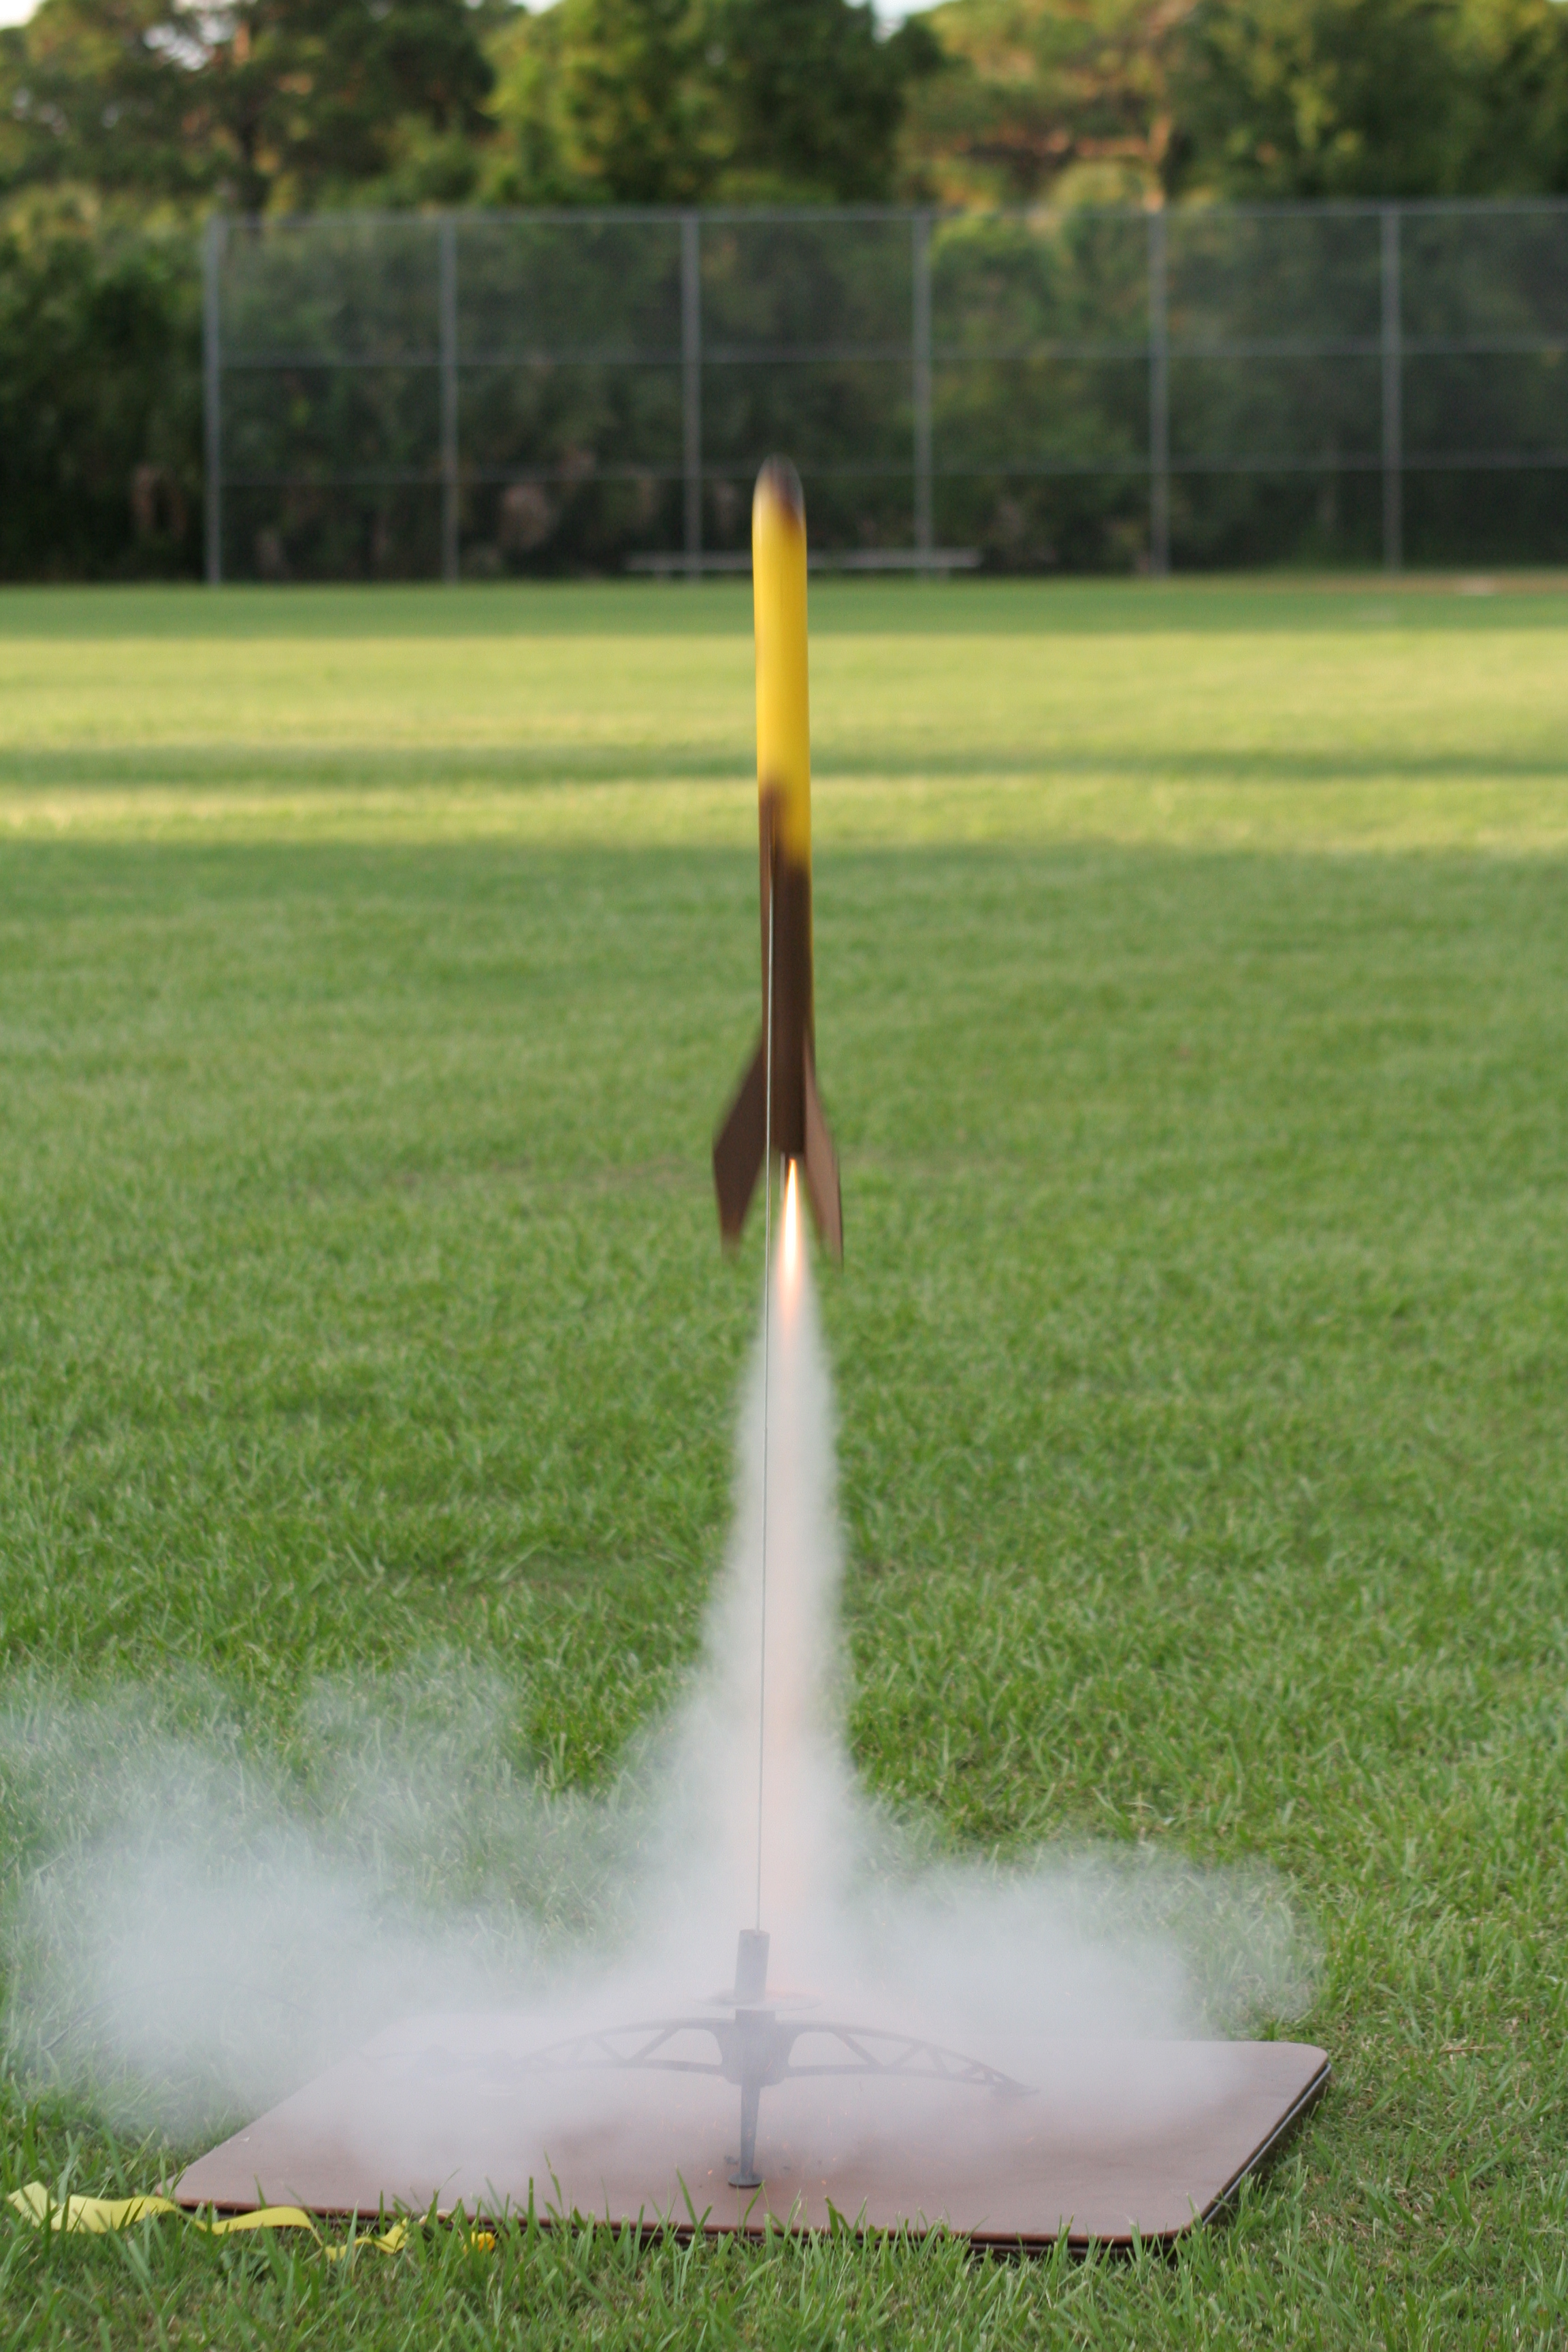 Amateur rockets that reached space